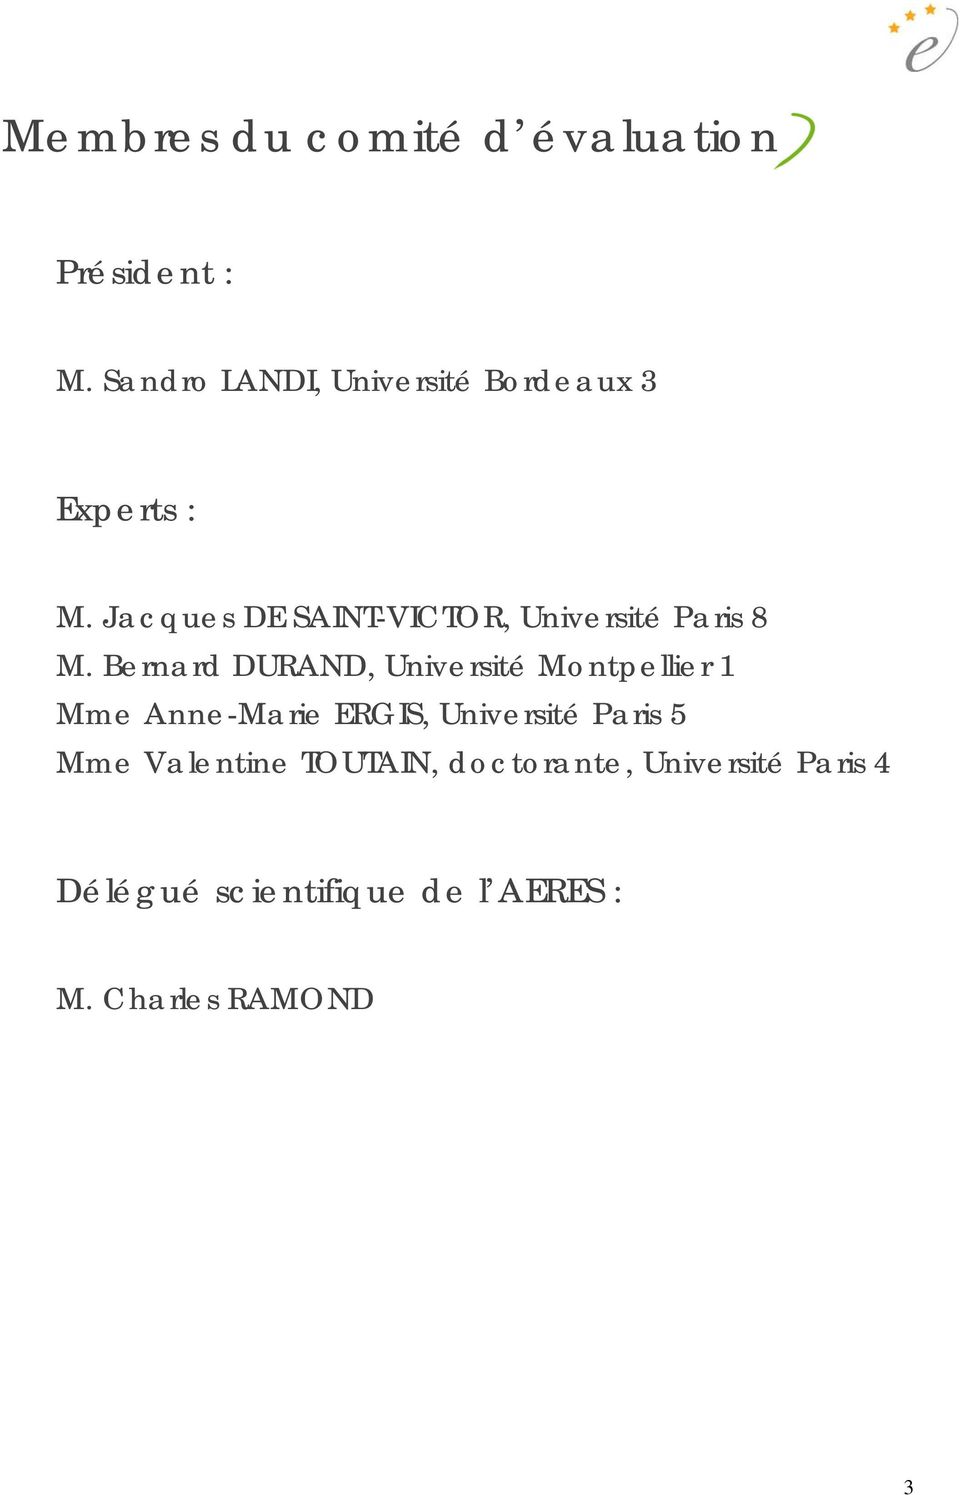 Jacques DE SAINT-VICTOR, Université Paris 8 M.